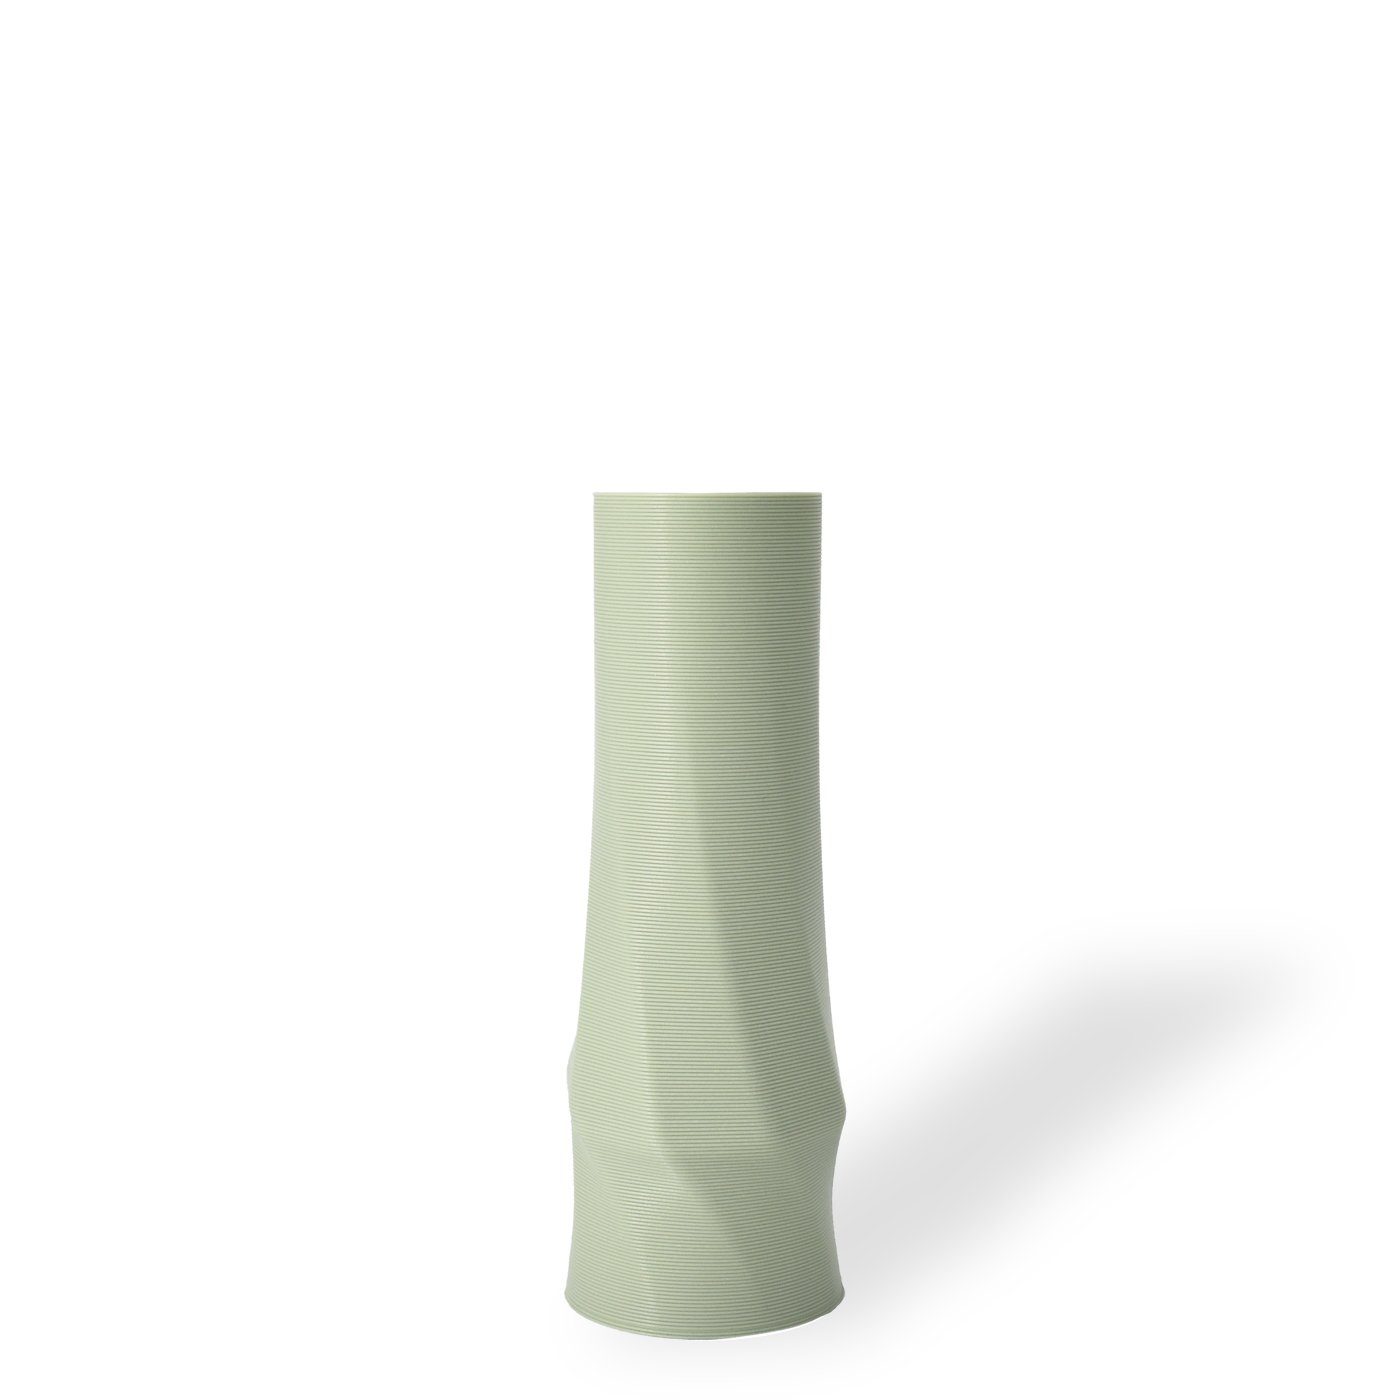 Shapes - Decorations Dekovase the vase - circle (basic), 3D Vasen, viele Farben, 100% 3D-Druck (Einzelmodell, 1 Vase), Wasserdicht; Leichte Struktur innerhalb des Materials (Rillung) Mintgrün